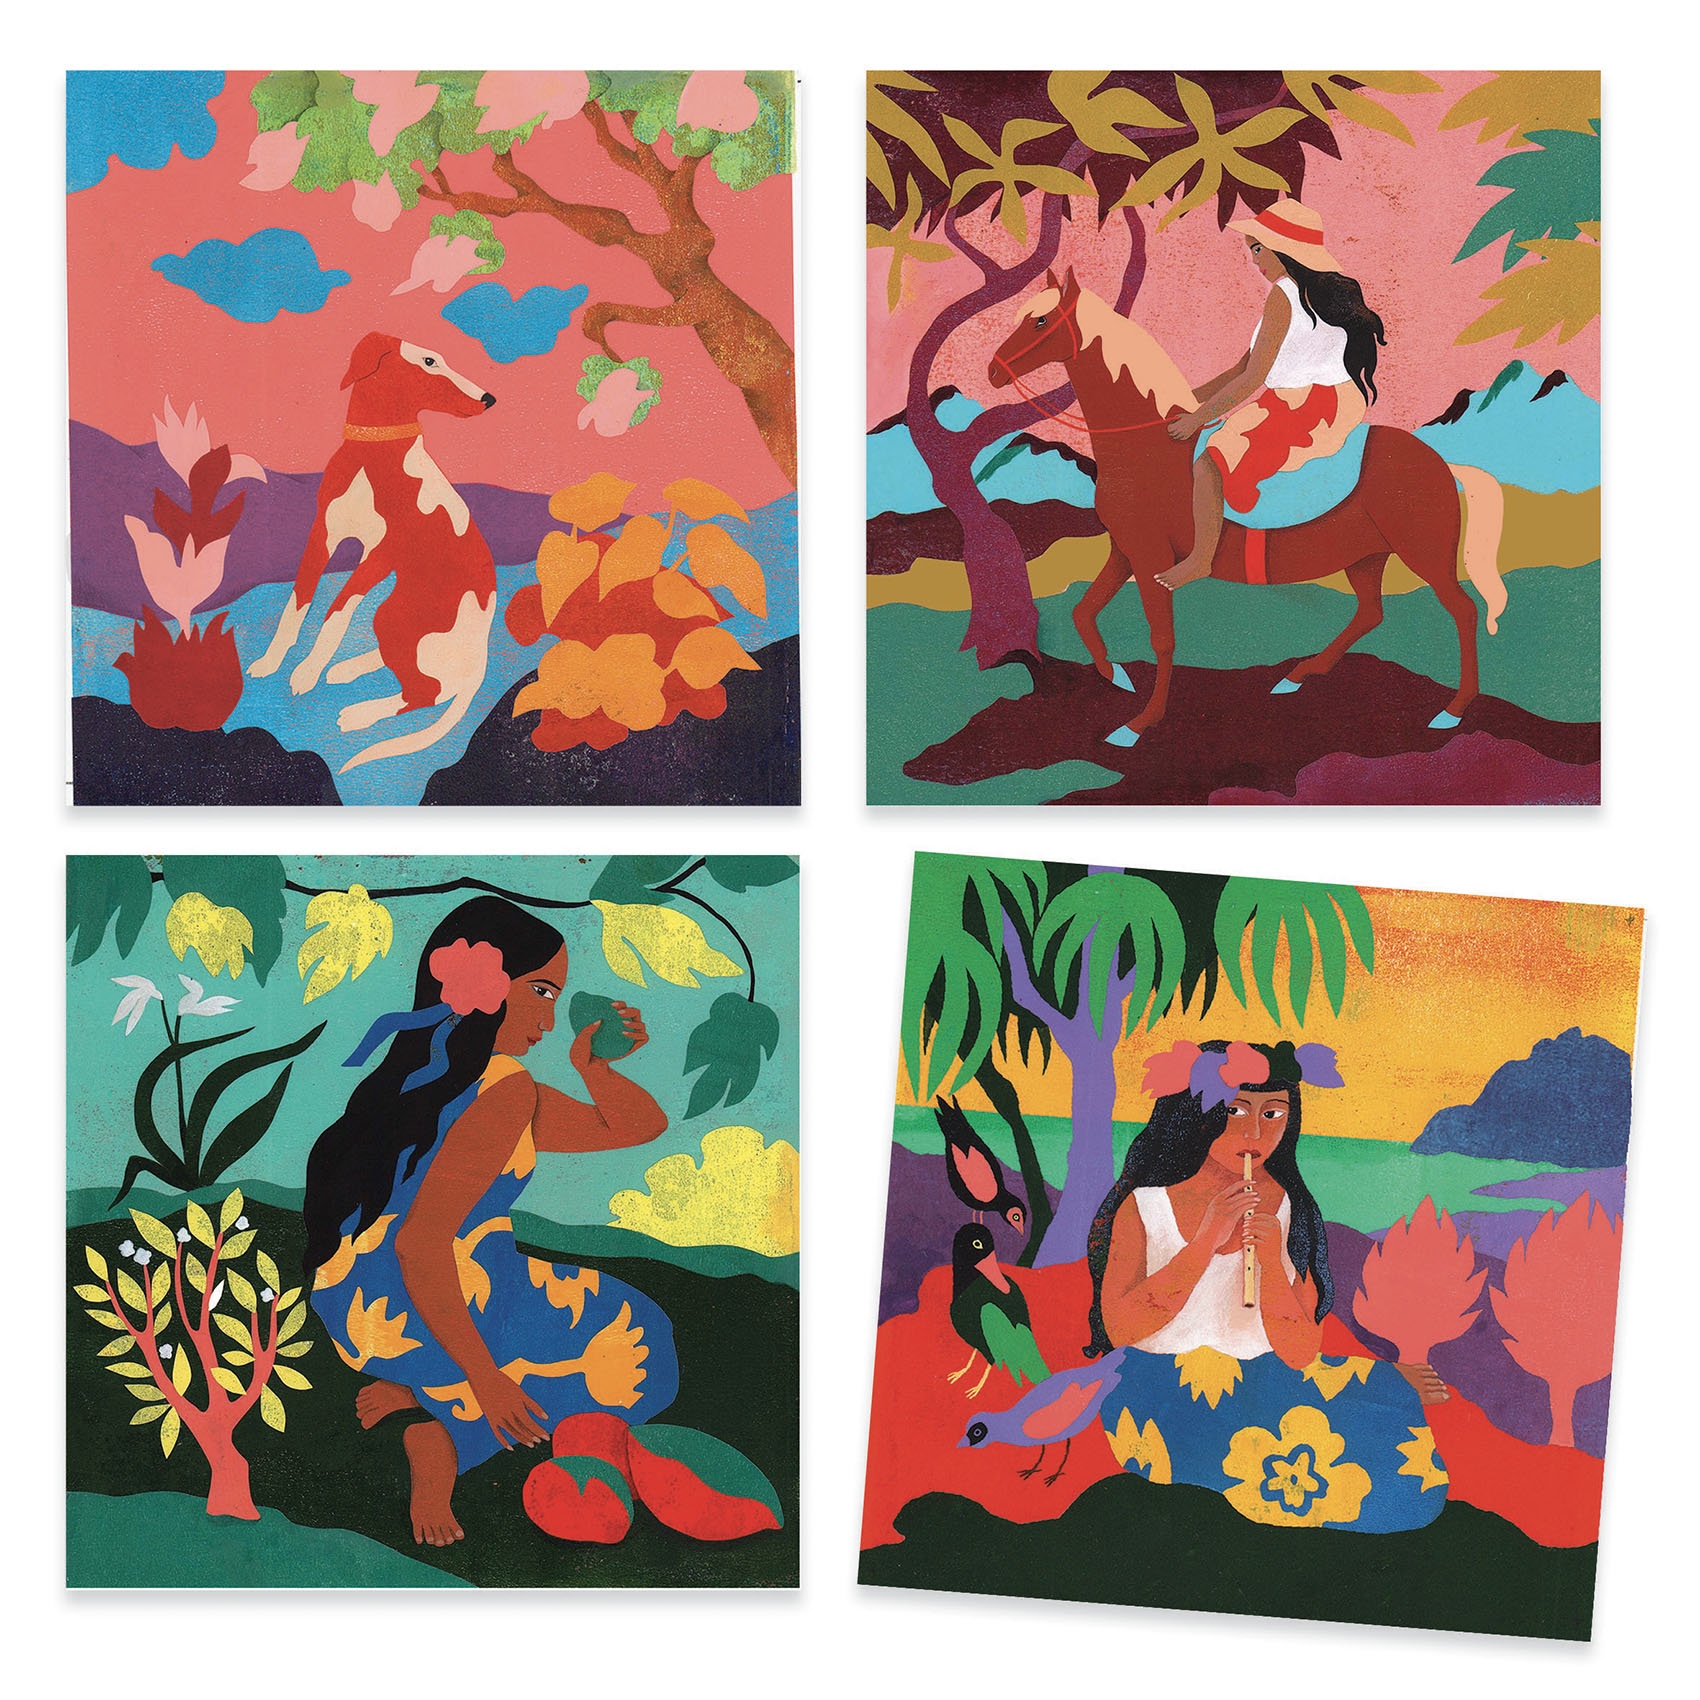 Művészeti műhely - Polinézia - Inspired by Paul Gauguin - Polynesia - 1